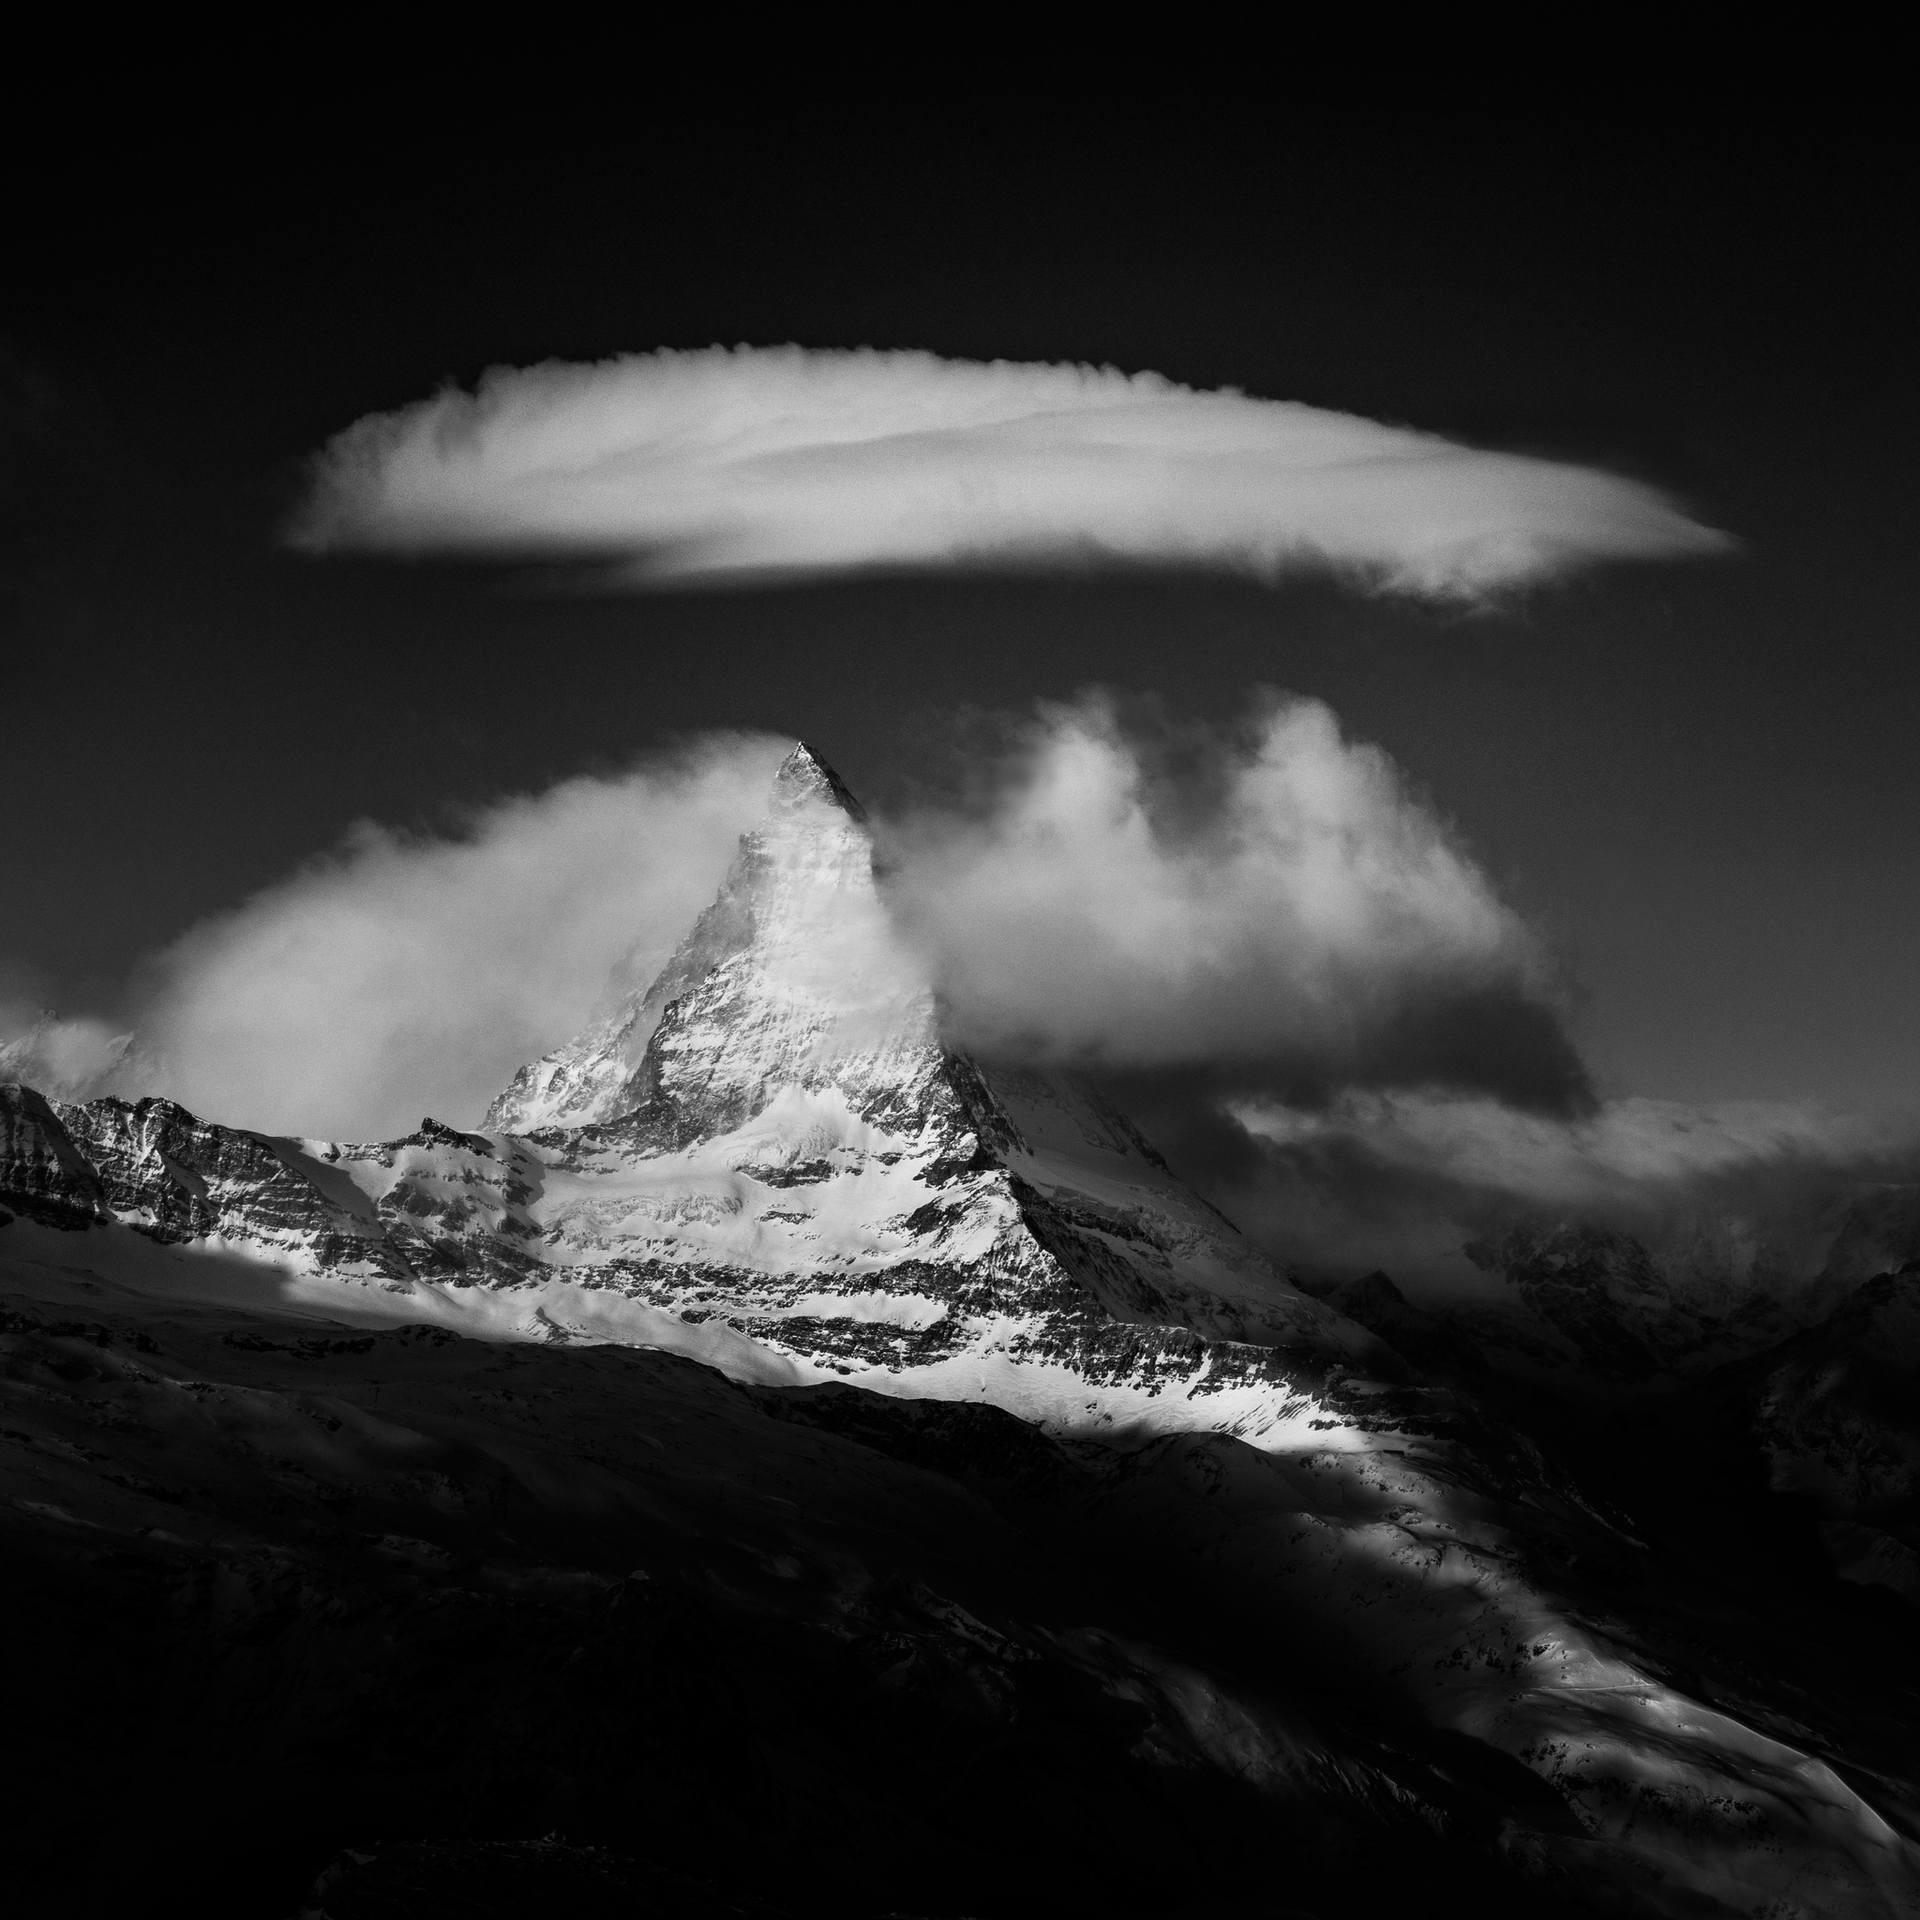 Облака над горой Маттерхорн, Швейцария, 2019. Автор Петер Свобода